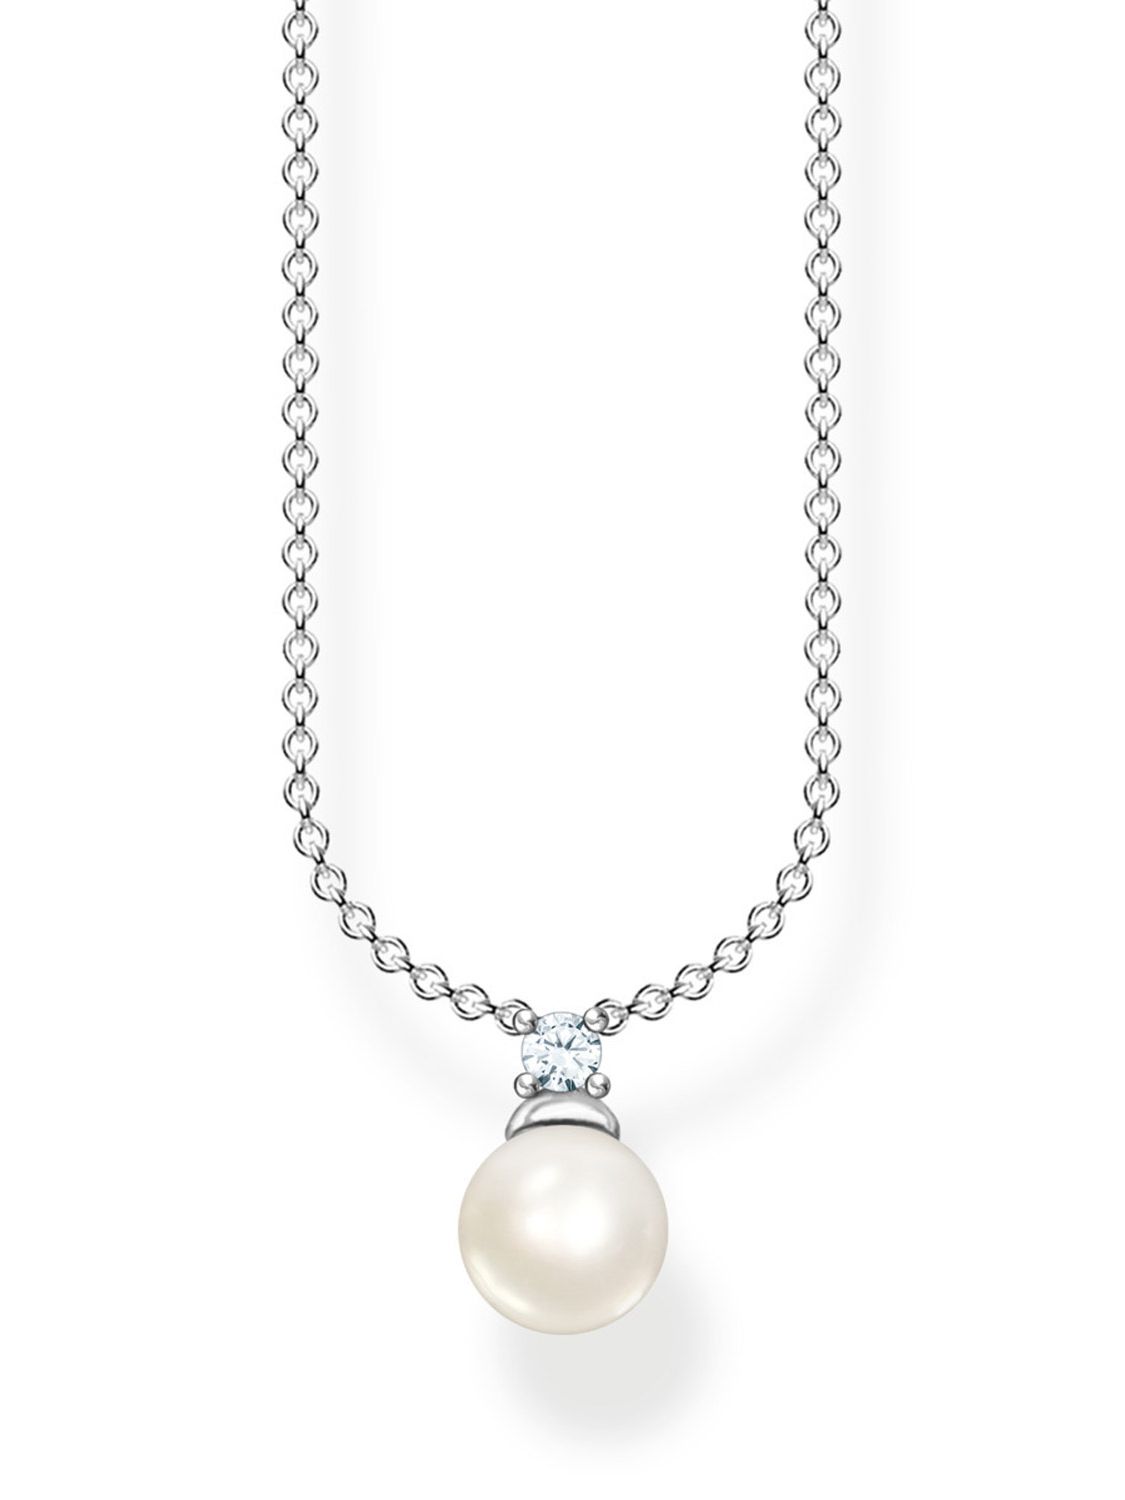 Thomas Sabo Damen-Halskette Perle Silber KE2121-167-14-L45v • uhrcenter